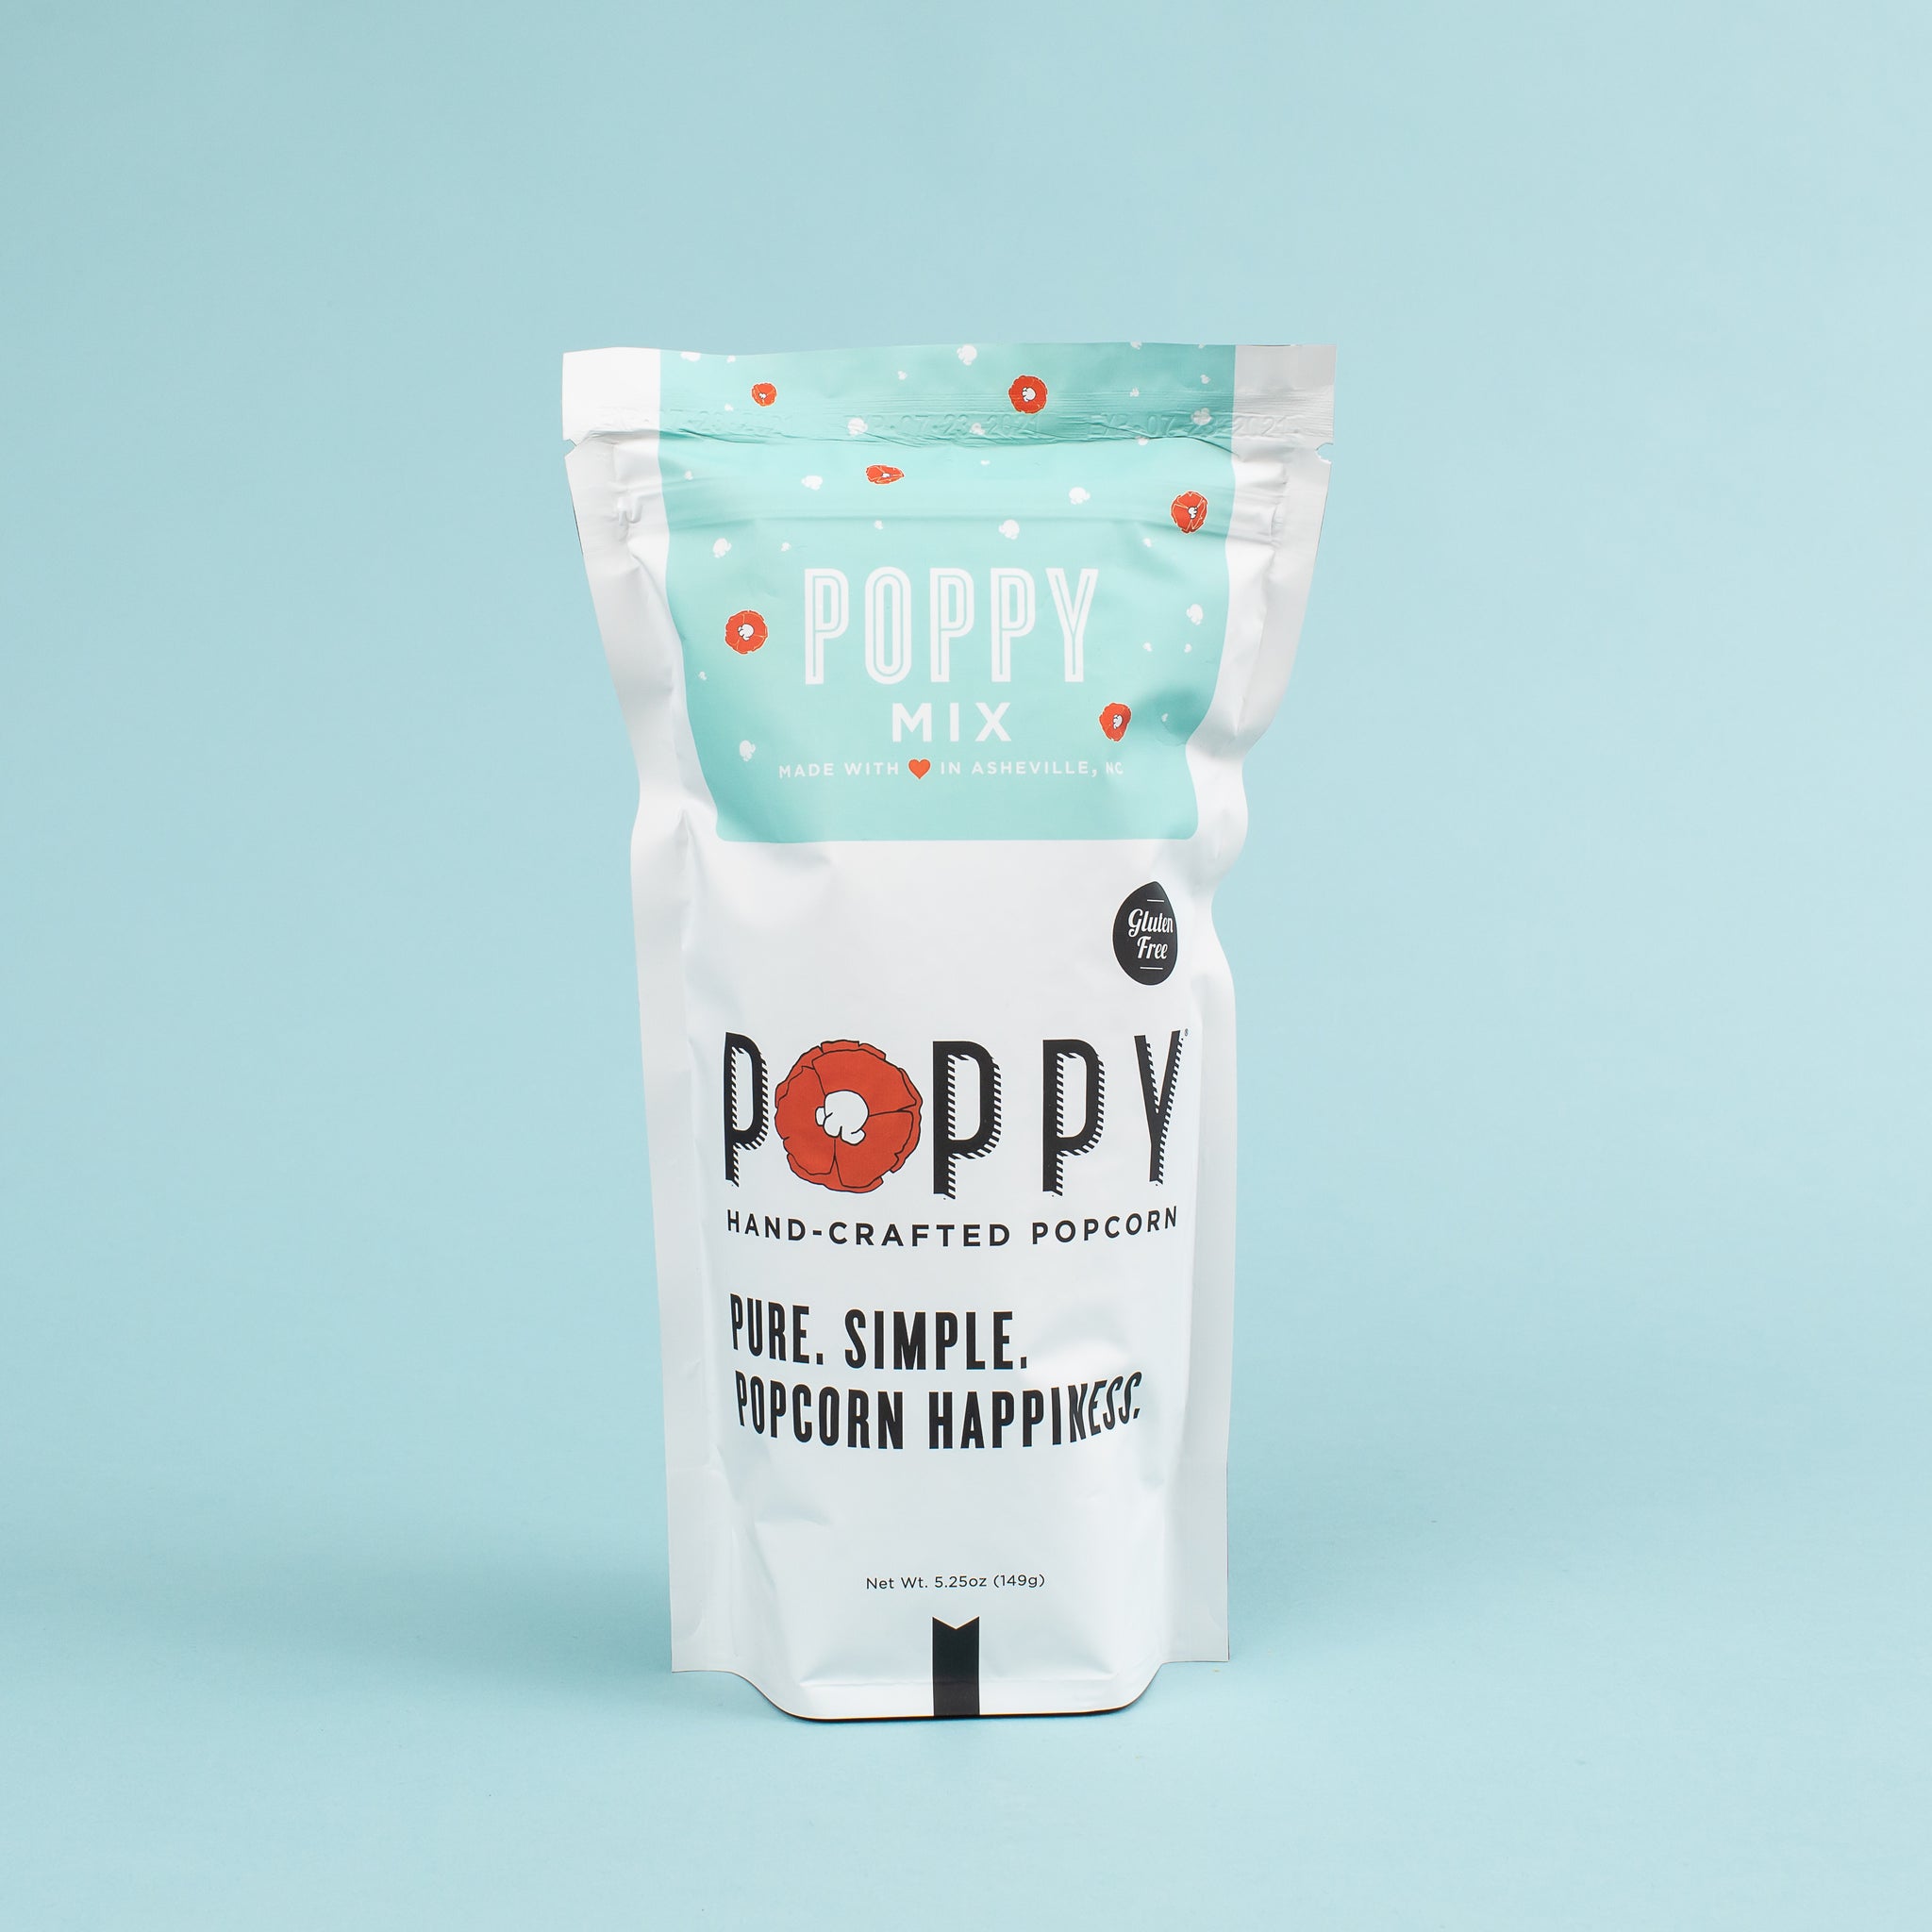 Poppy Handcrafted Popcorn - Poppy Mix